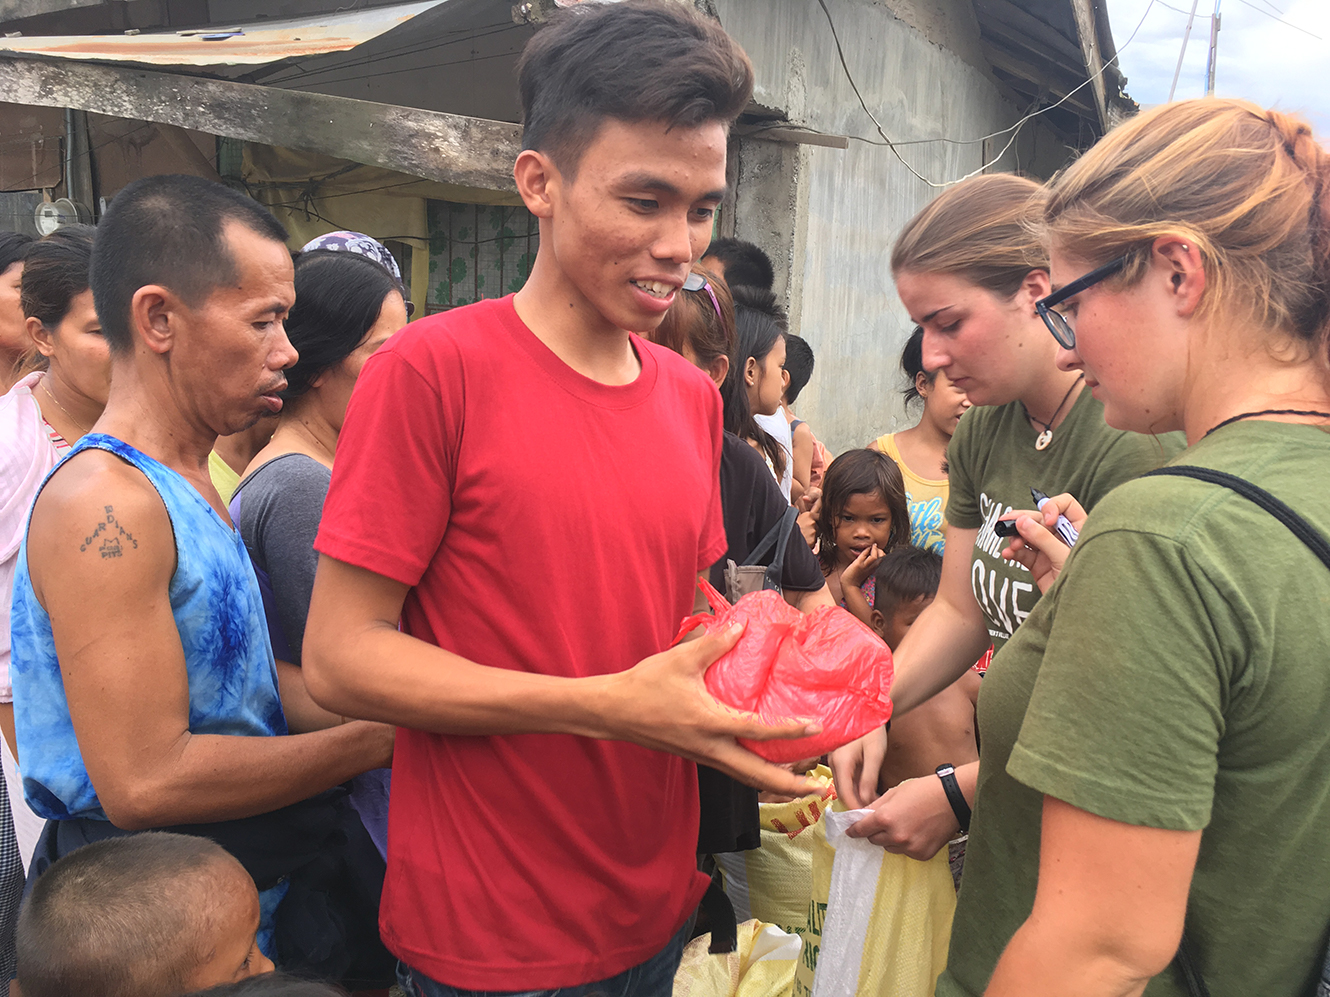 IMG 3039 - Aktion Reissack - Aus Sicht einer Freiwilligen